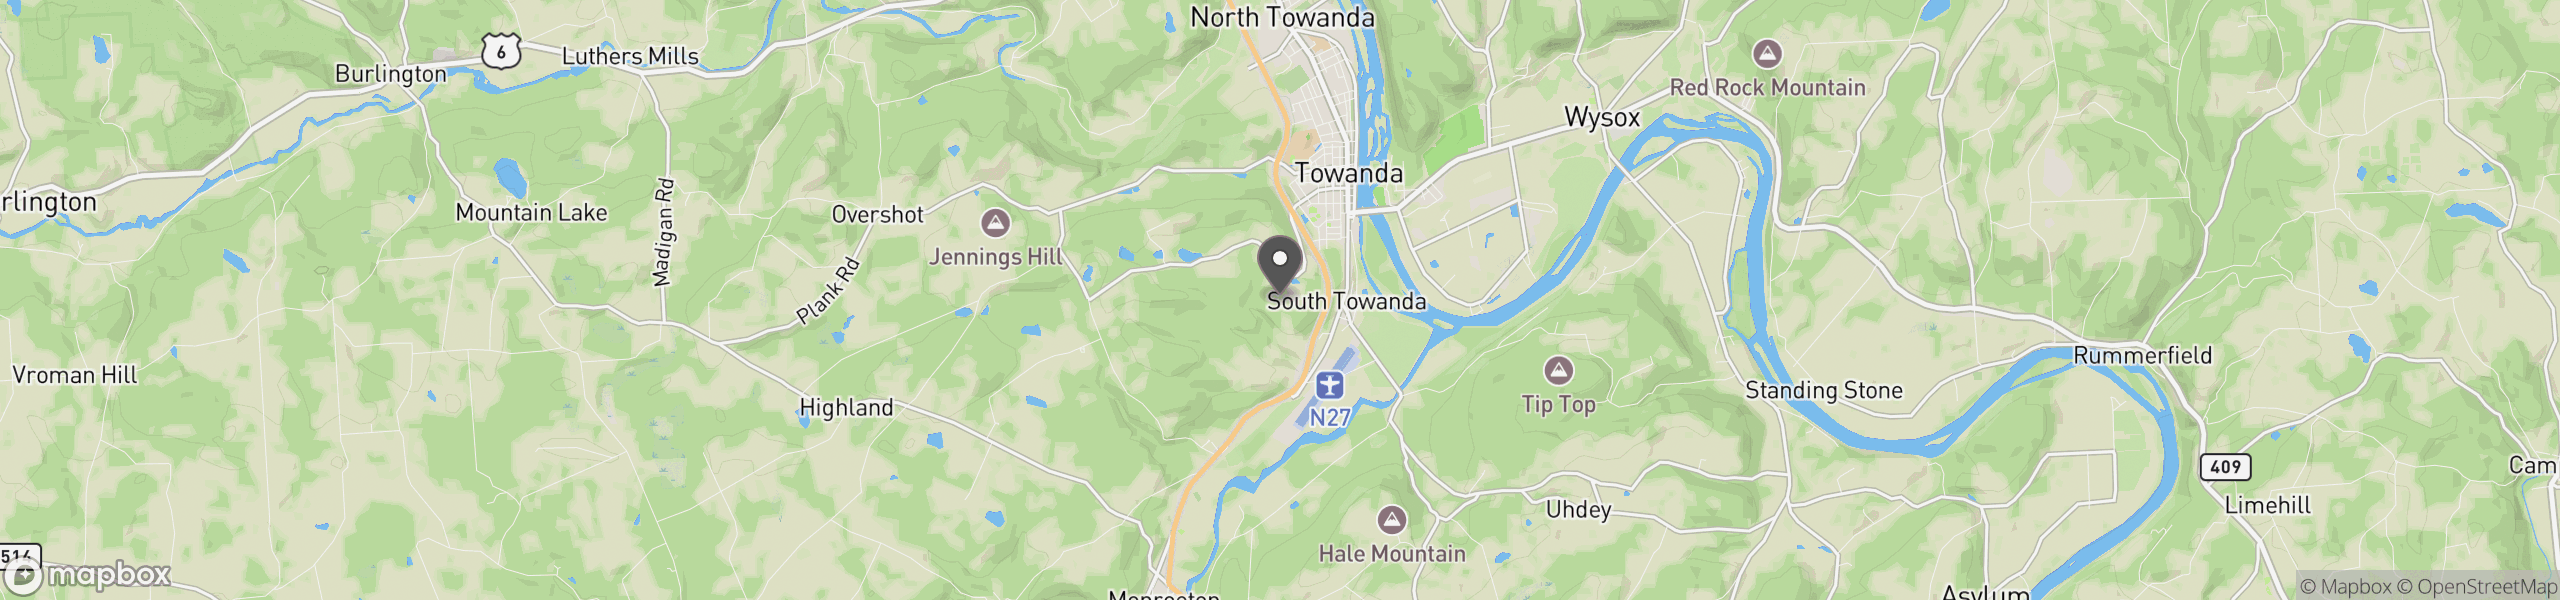 Towanda, PA